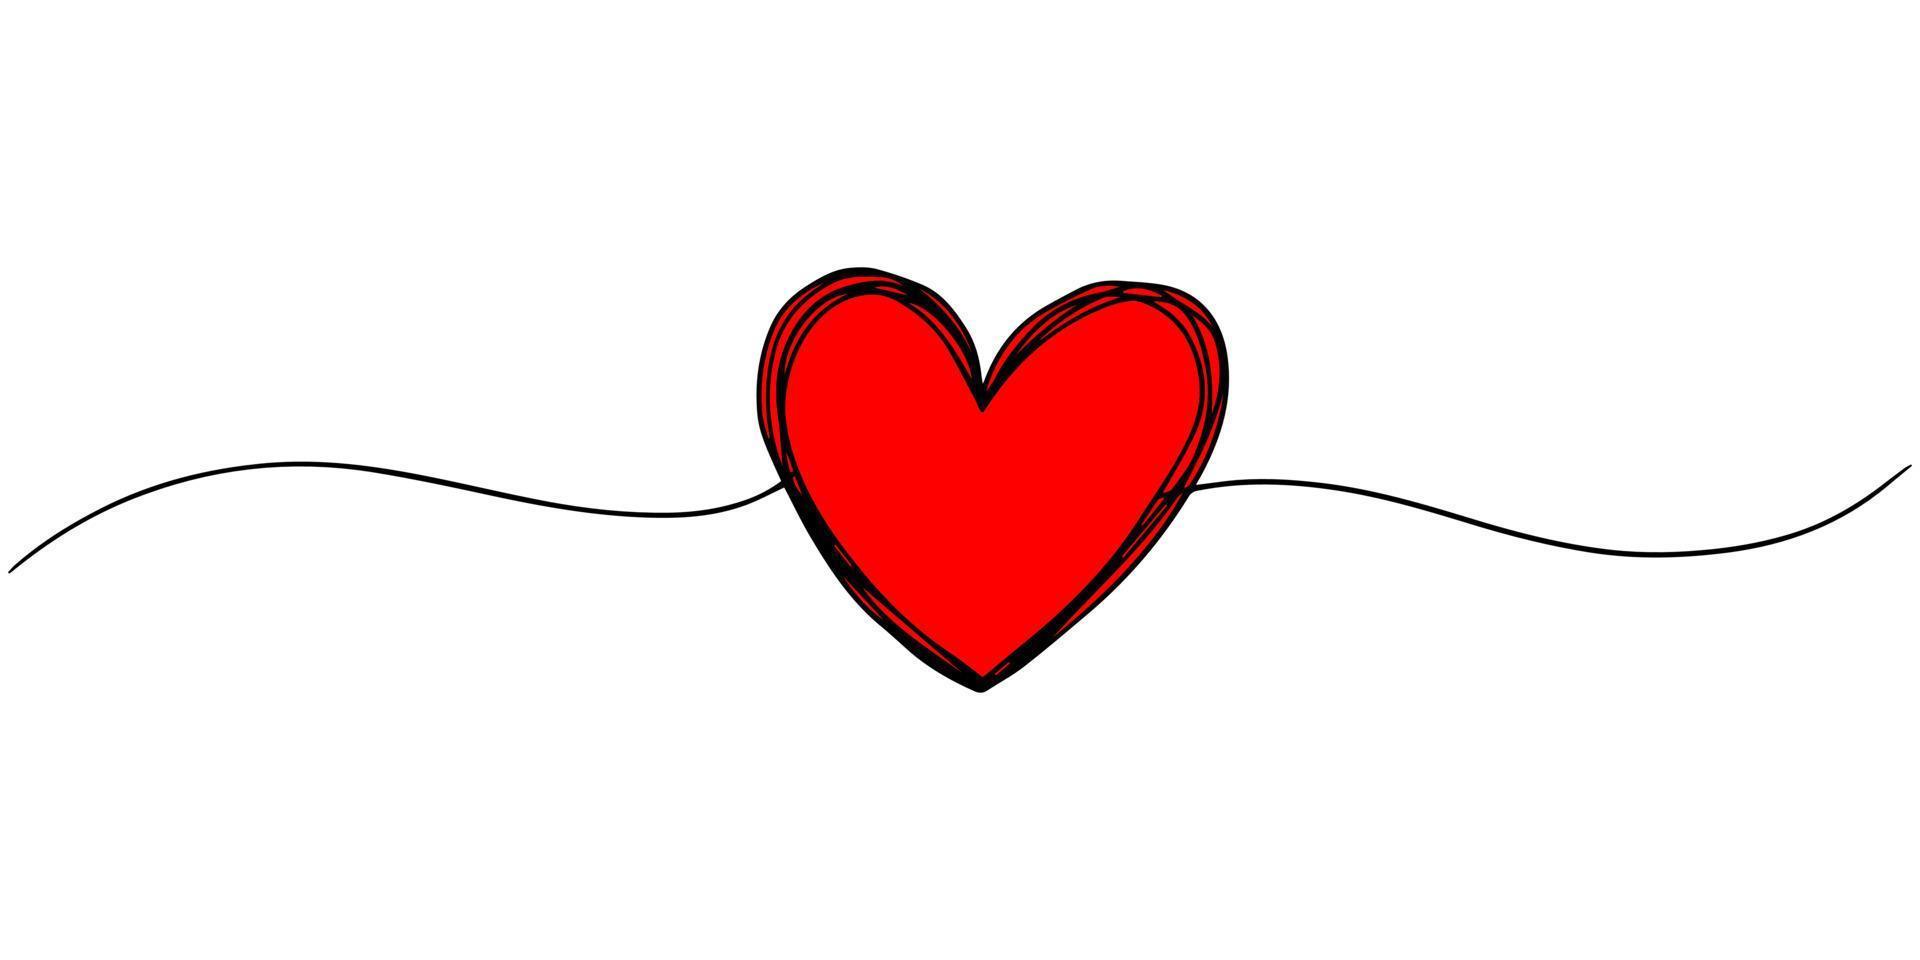 cuore disegnato a mano con linea sottile, forma divisoria, scarabocchio rotondo grungy aggrovigliato isolato su sfondo bianco.illustrazione vettoriale